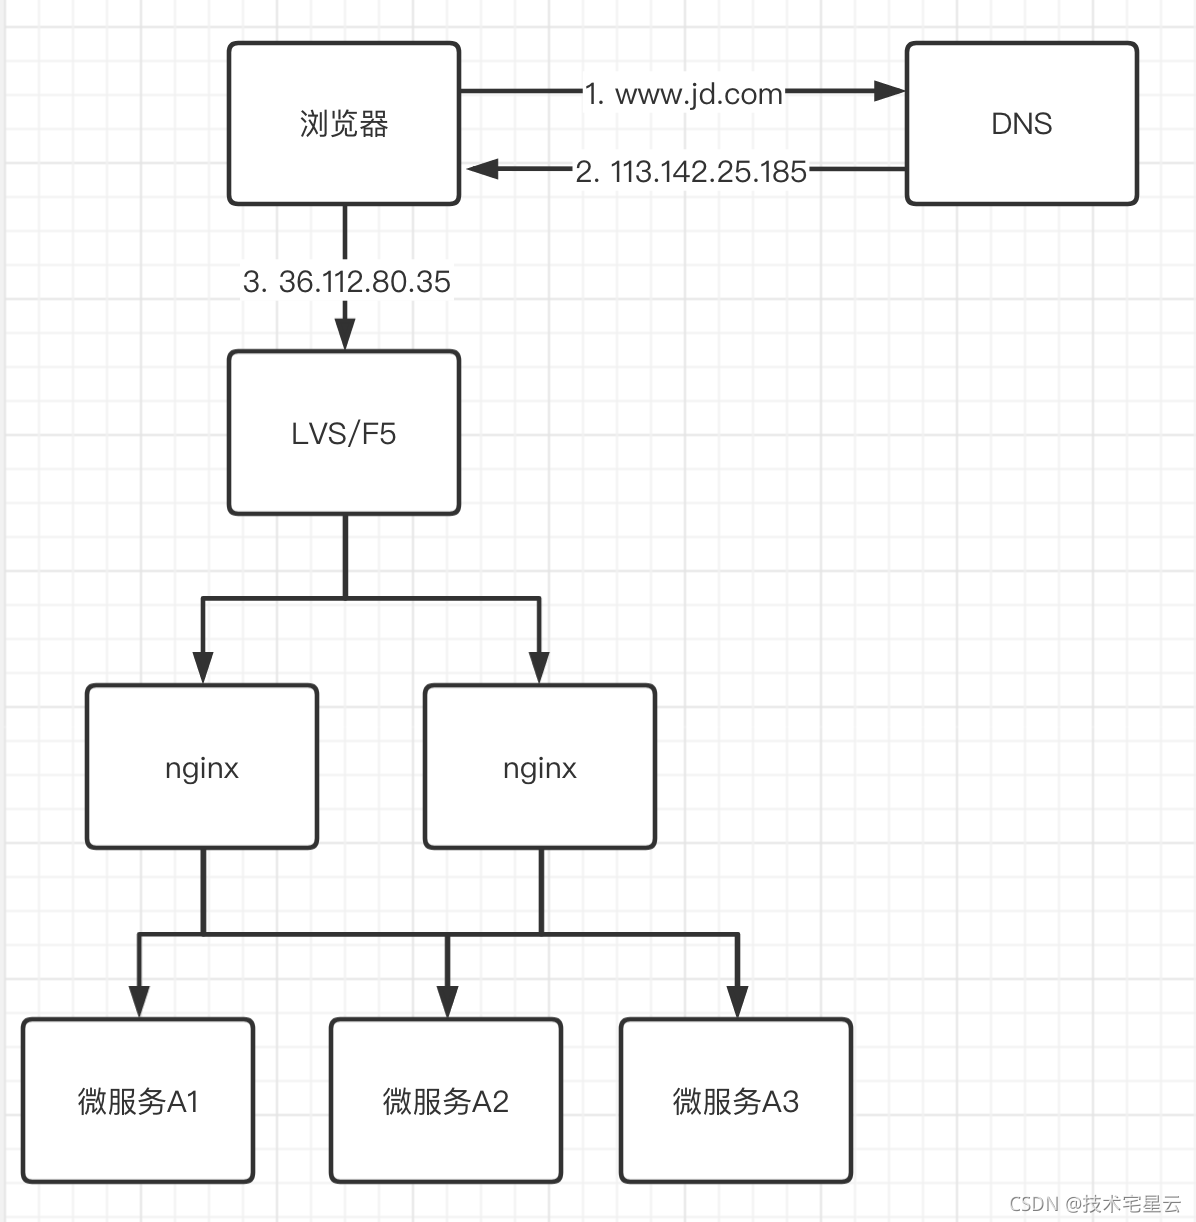 qingfeng.zhao > Nginx 负载均衡与反向代理架构设计篇 > image2021-10-13 20:23:52.png